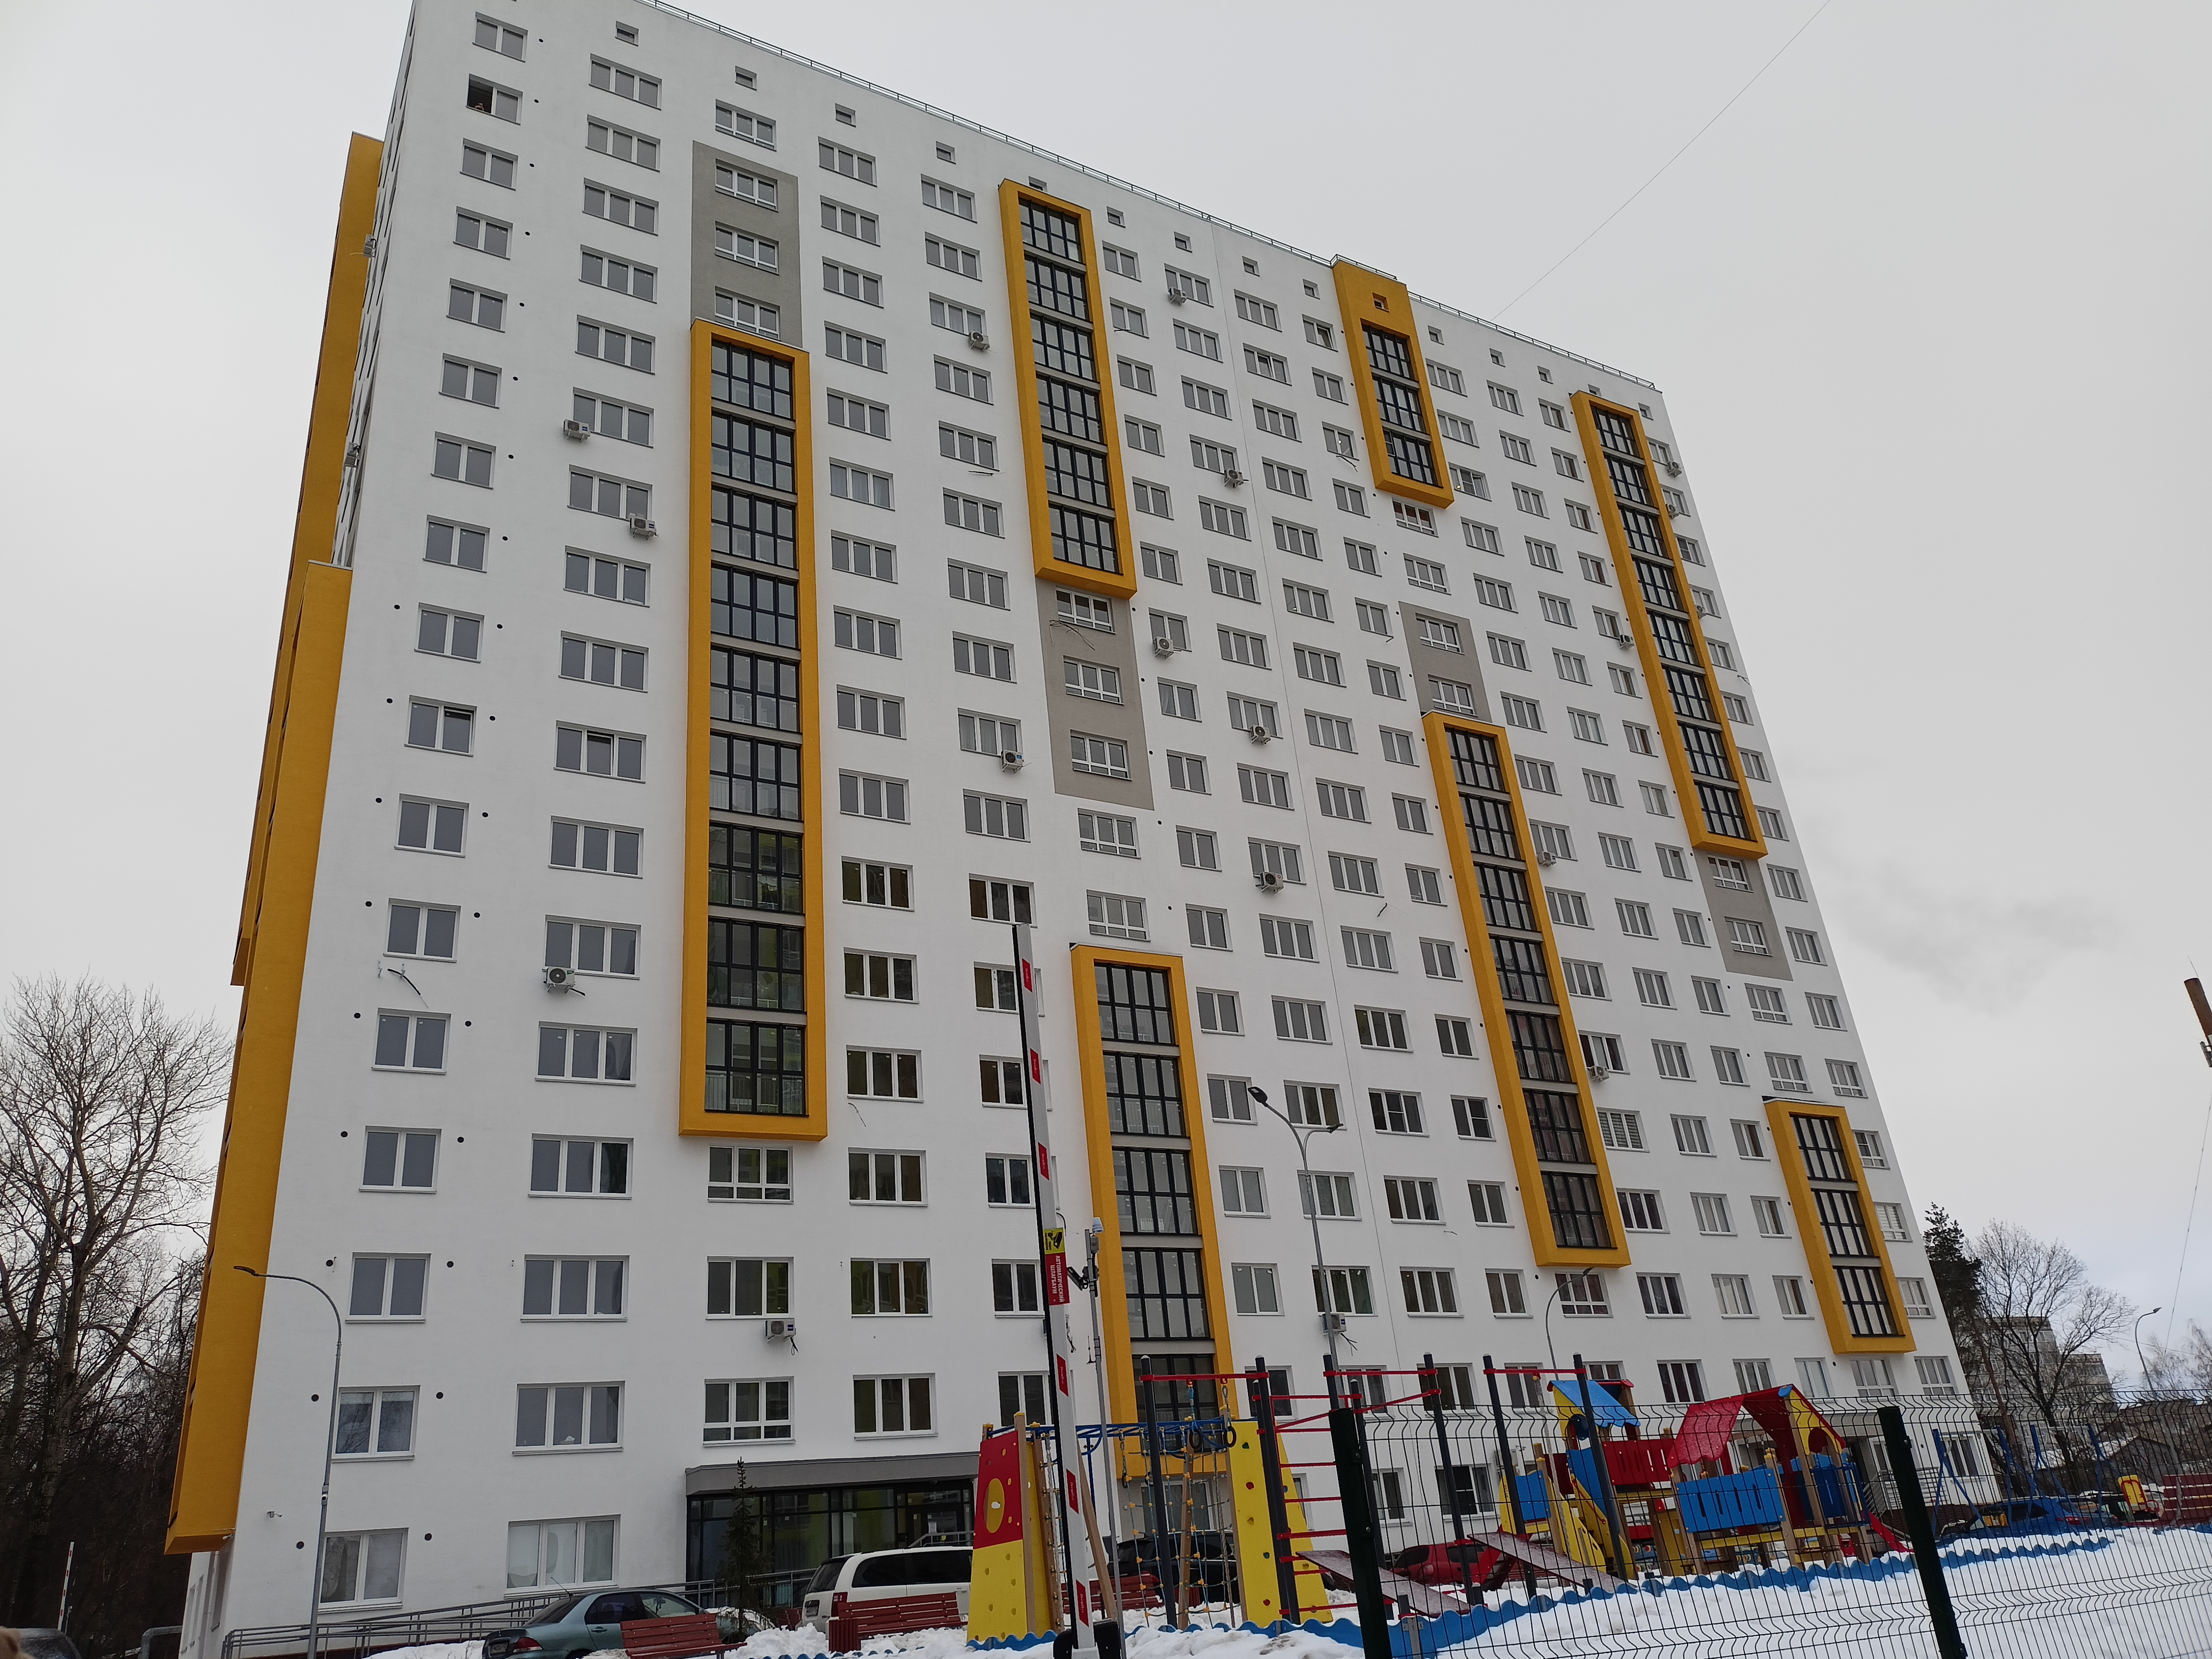 Продажи квартир в новостройках упали почти в 2 раза за год в Нижегородской области - фото 1